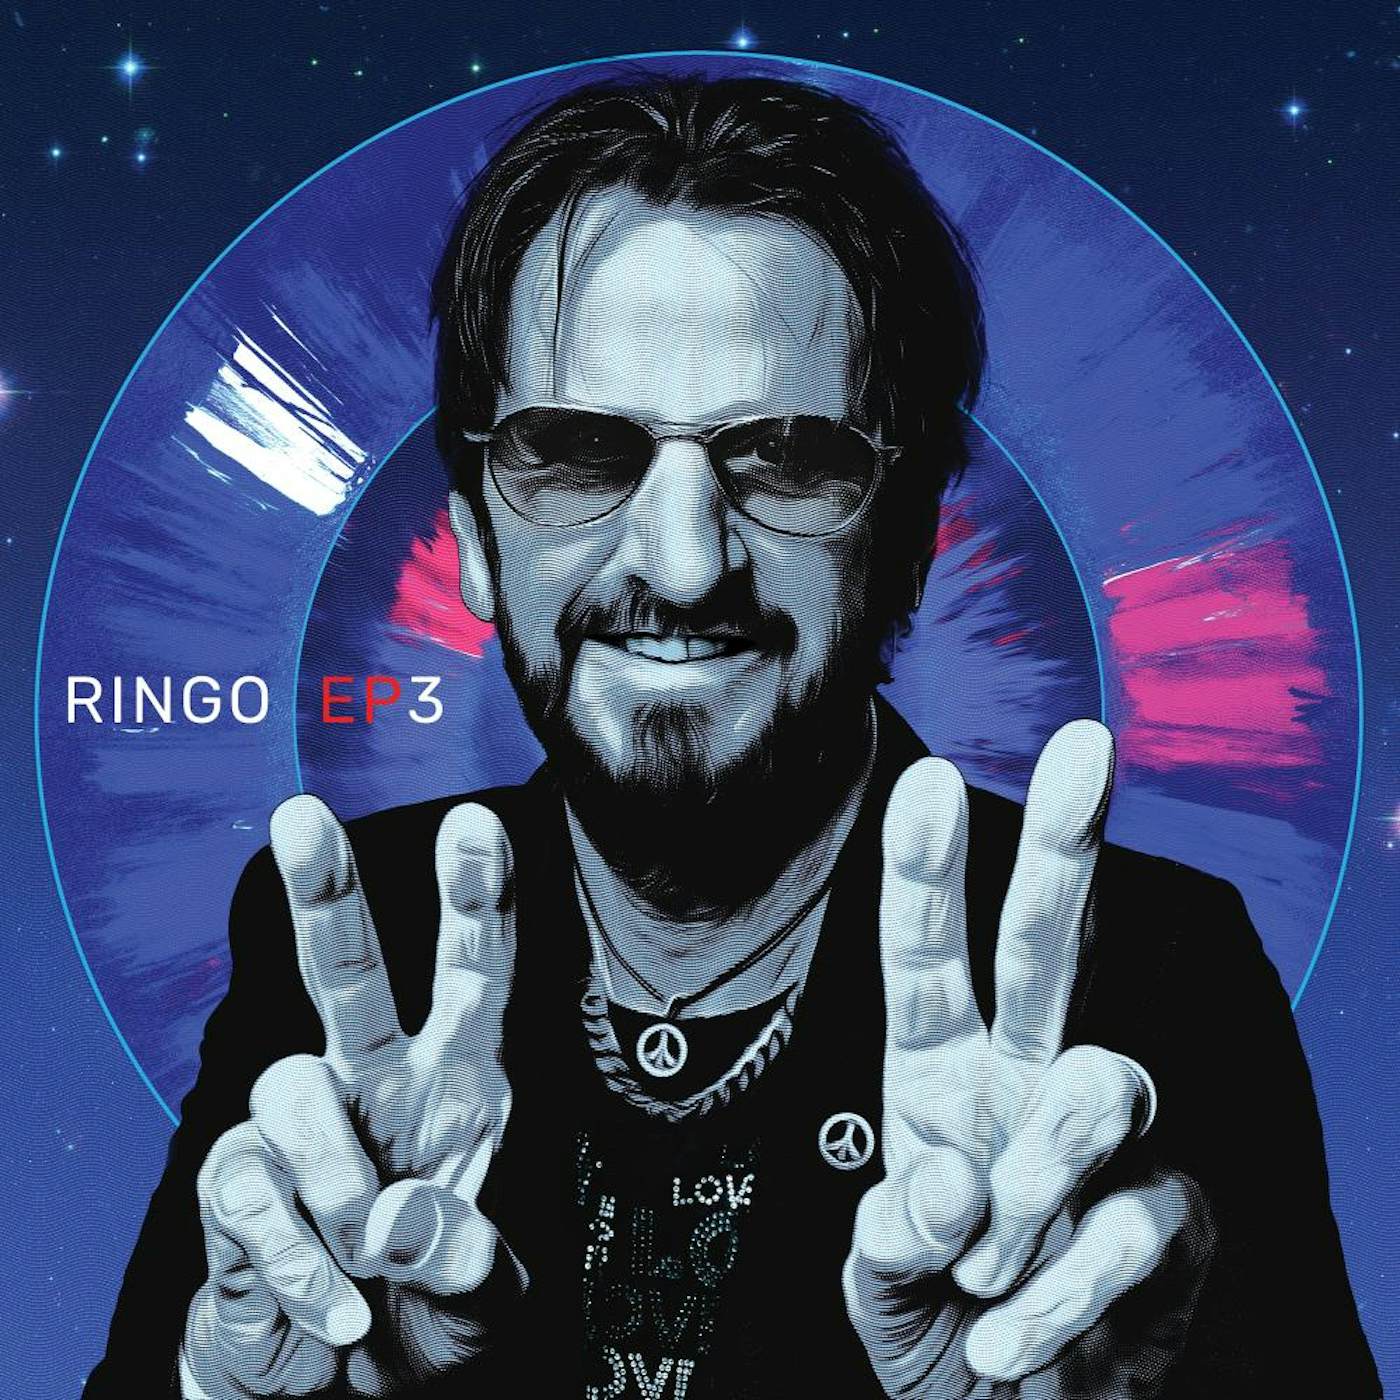 Ringo Starr EP3 Vinyl Record